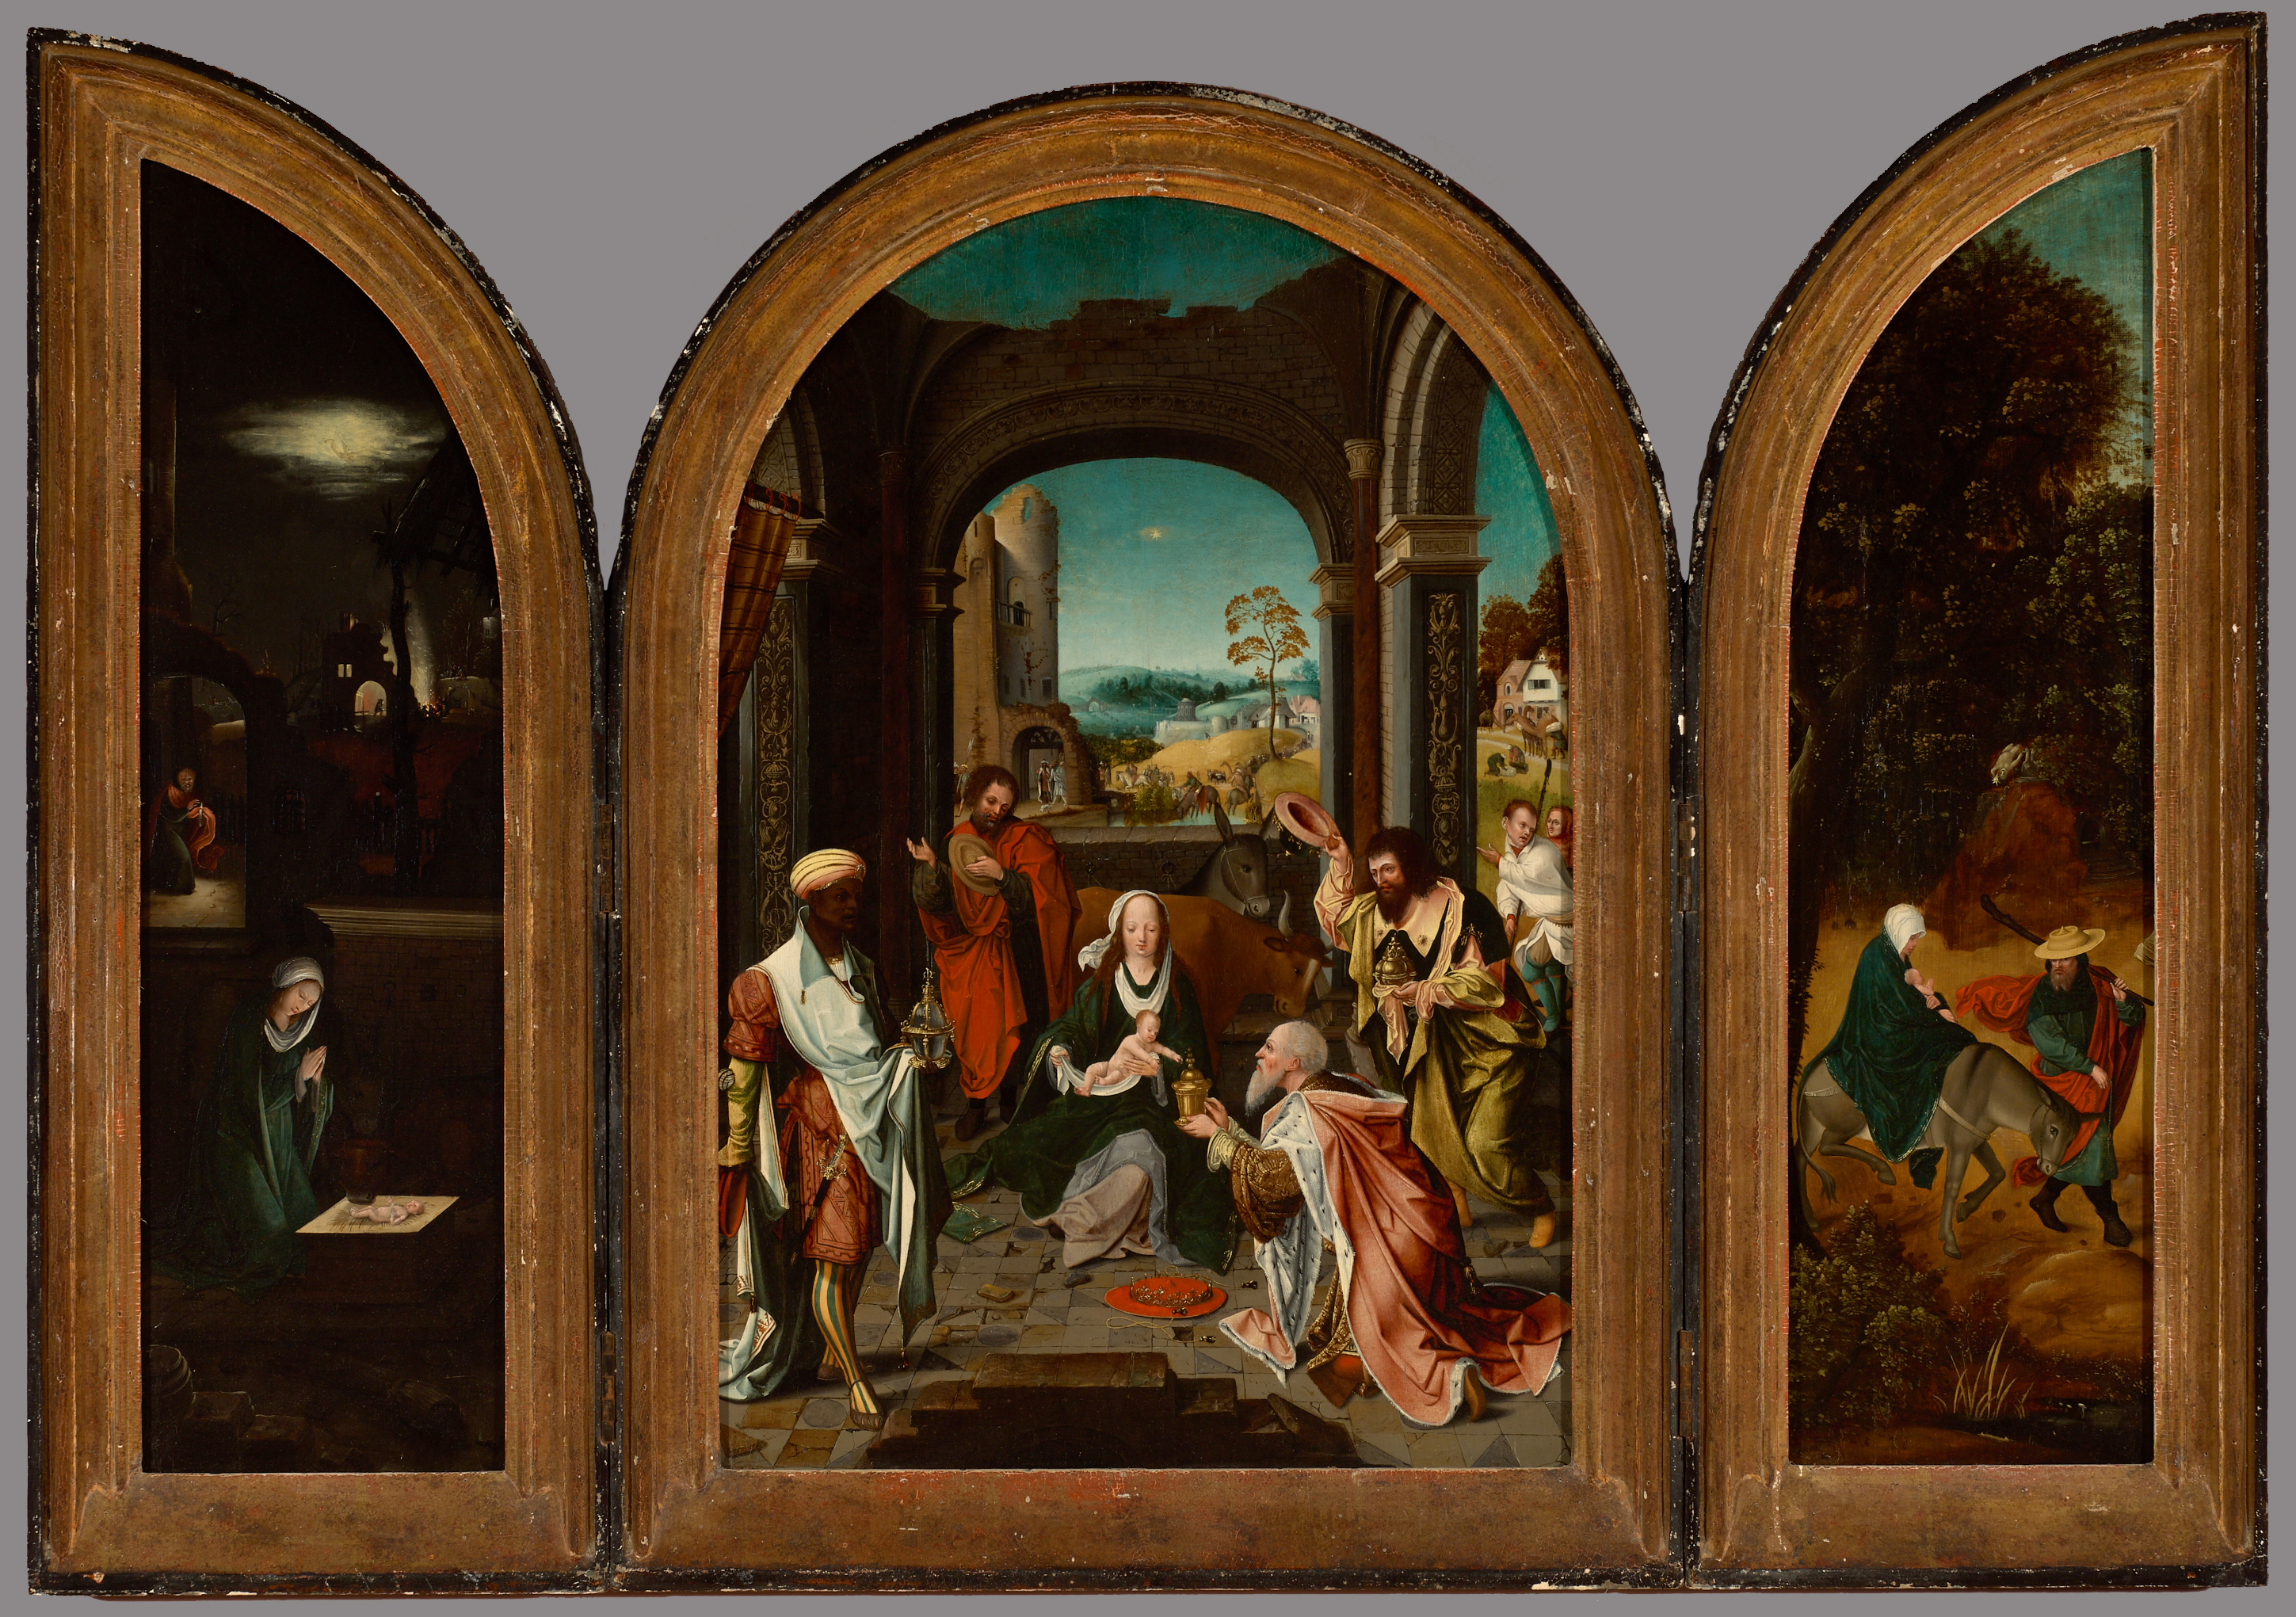 Triptych after Jan de Beer